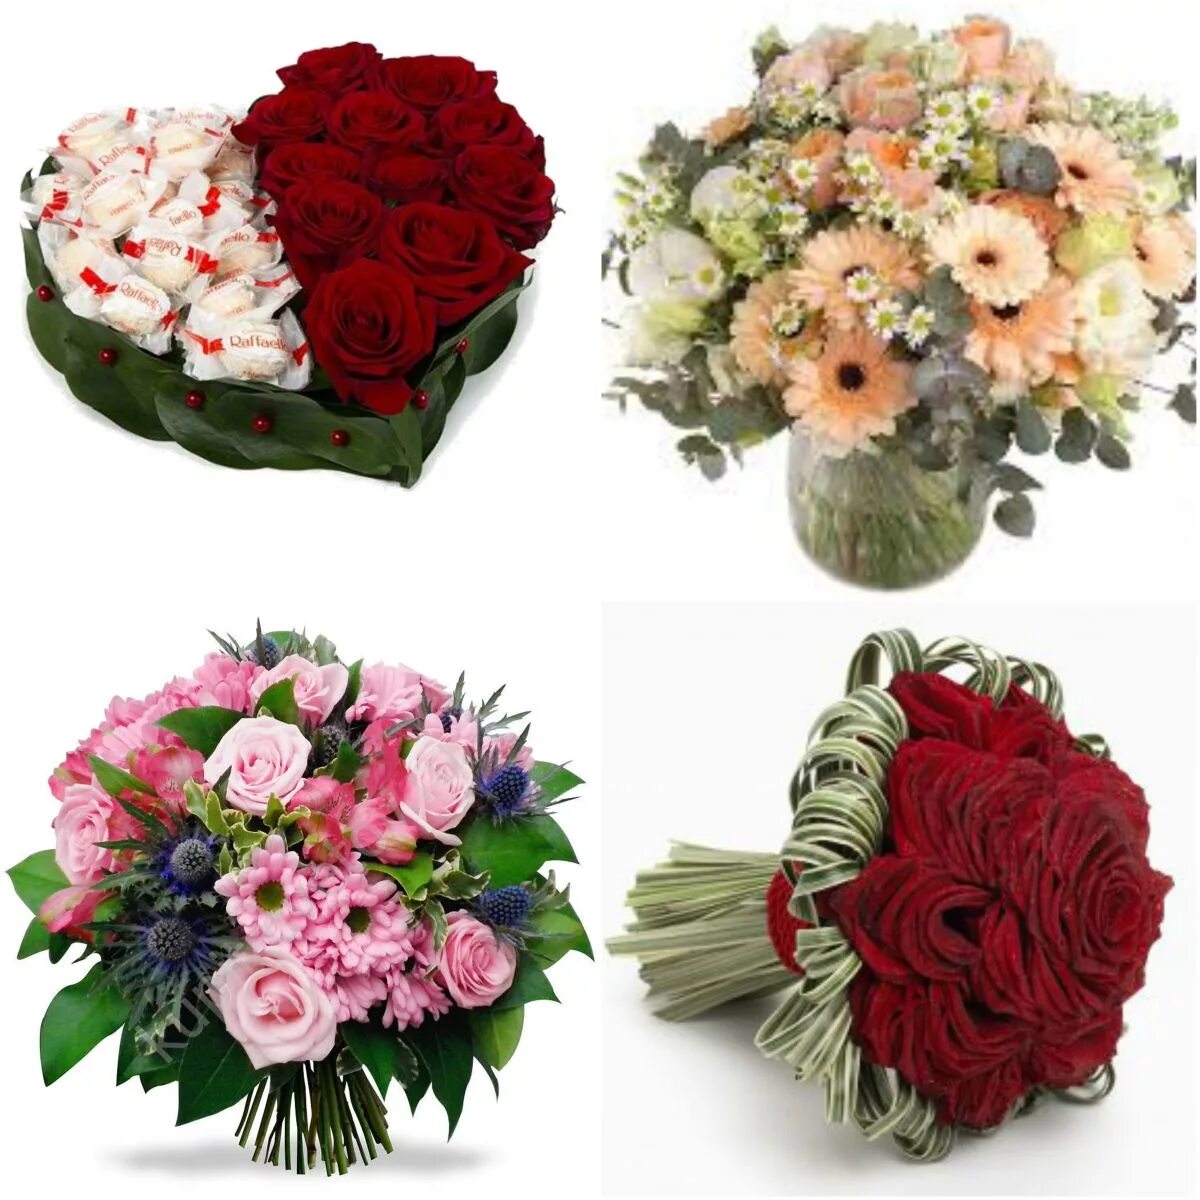 Заказать букет цветов в спб с доставкой. Букет цветов с доставкой. Цветы с доставкой на дом. Как можно заказать цветы. Цветы с доставкой картинки.